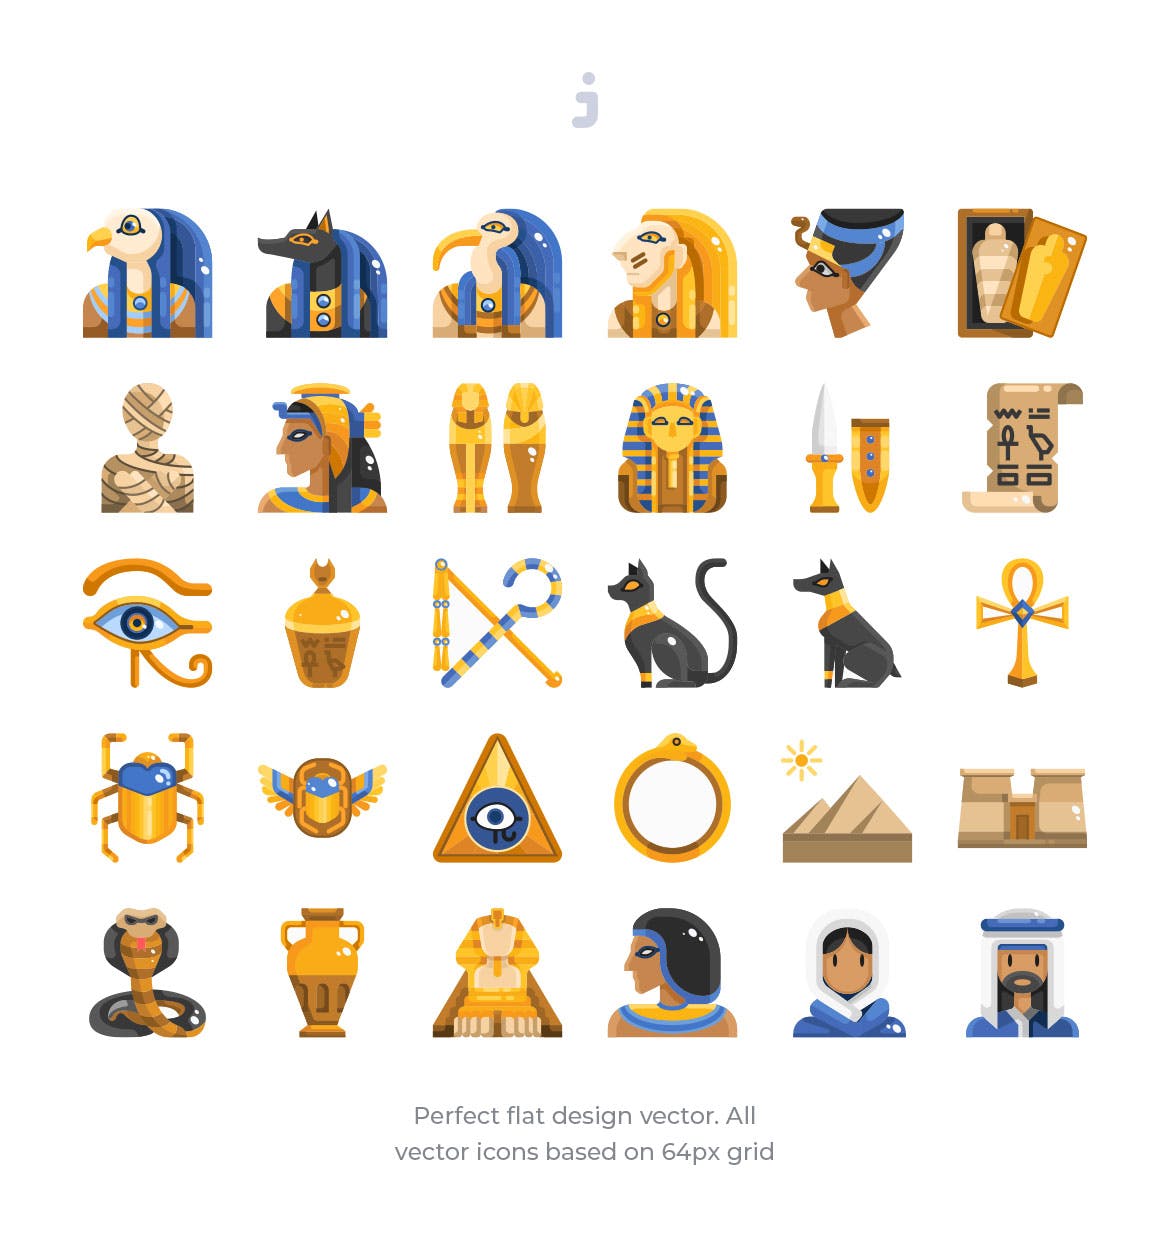 30枚埃及元素扁平设计风格矢量图标 30 Egypt Element Icons – Flat插图1